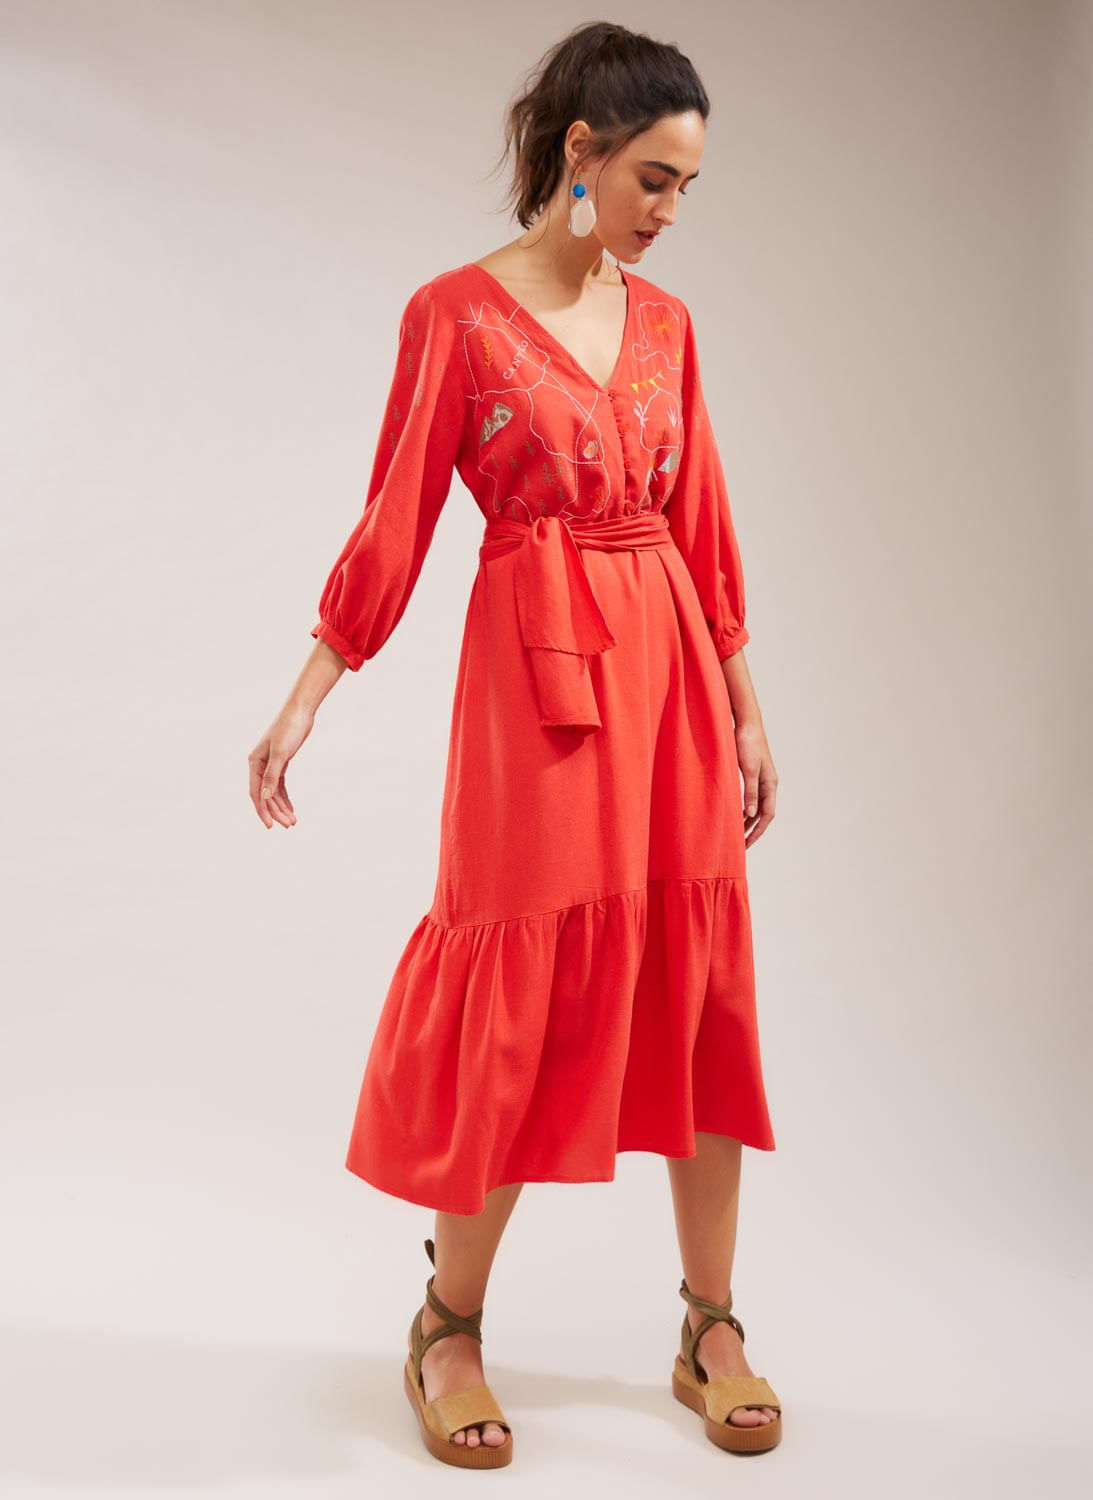 50 inspiraciones de vestidos de fiesta rojos que te encantarán